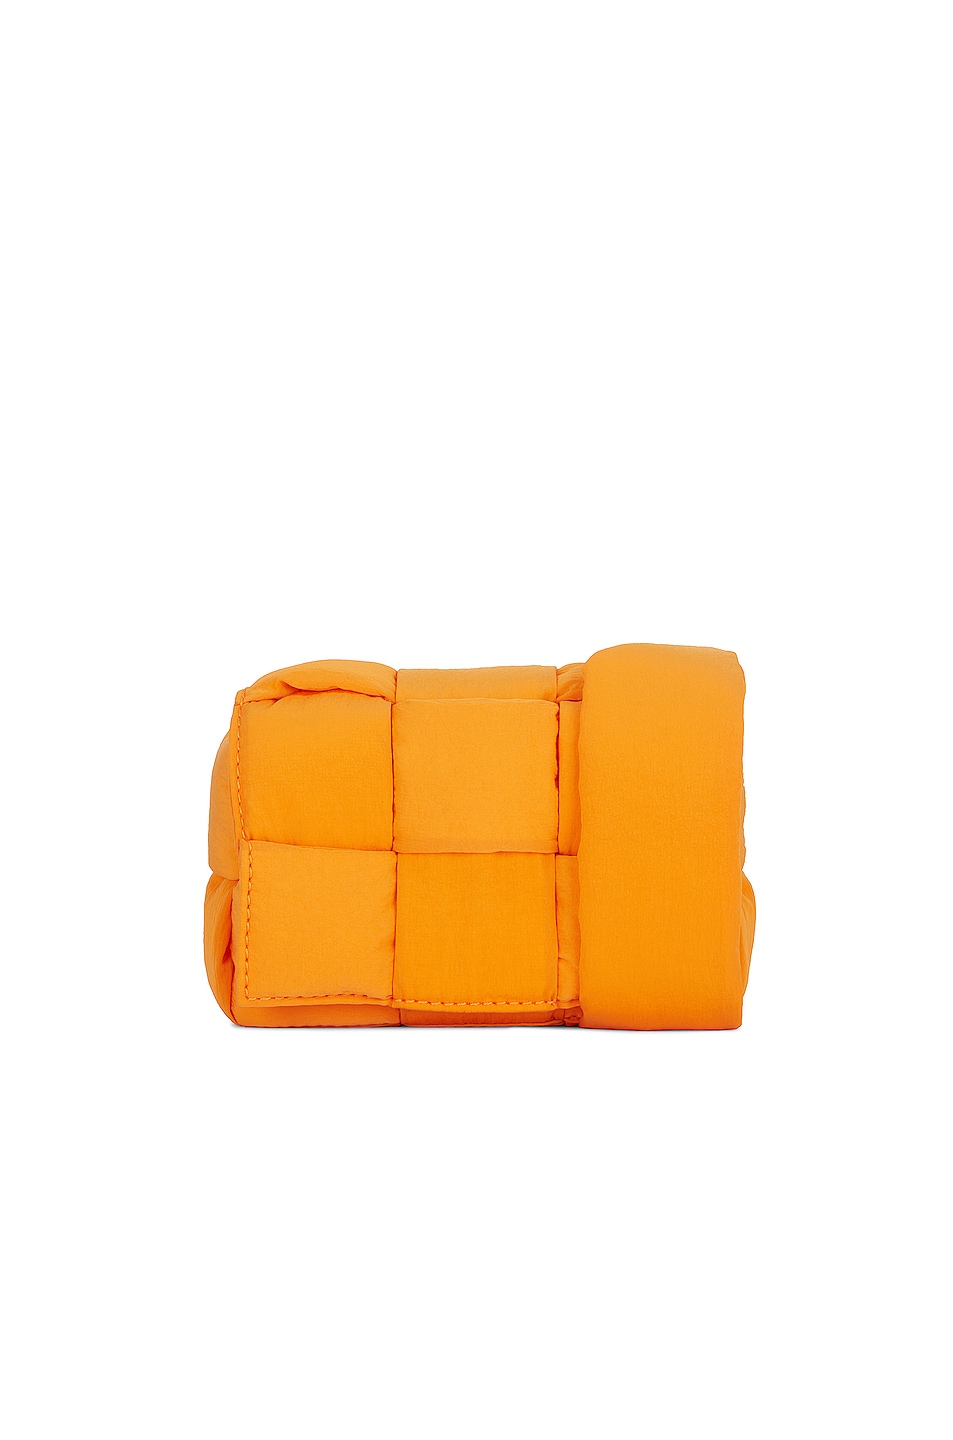 Borsa Belt Bag in Tangerine